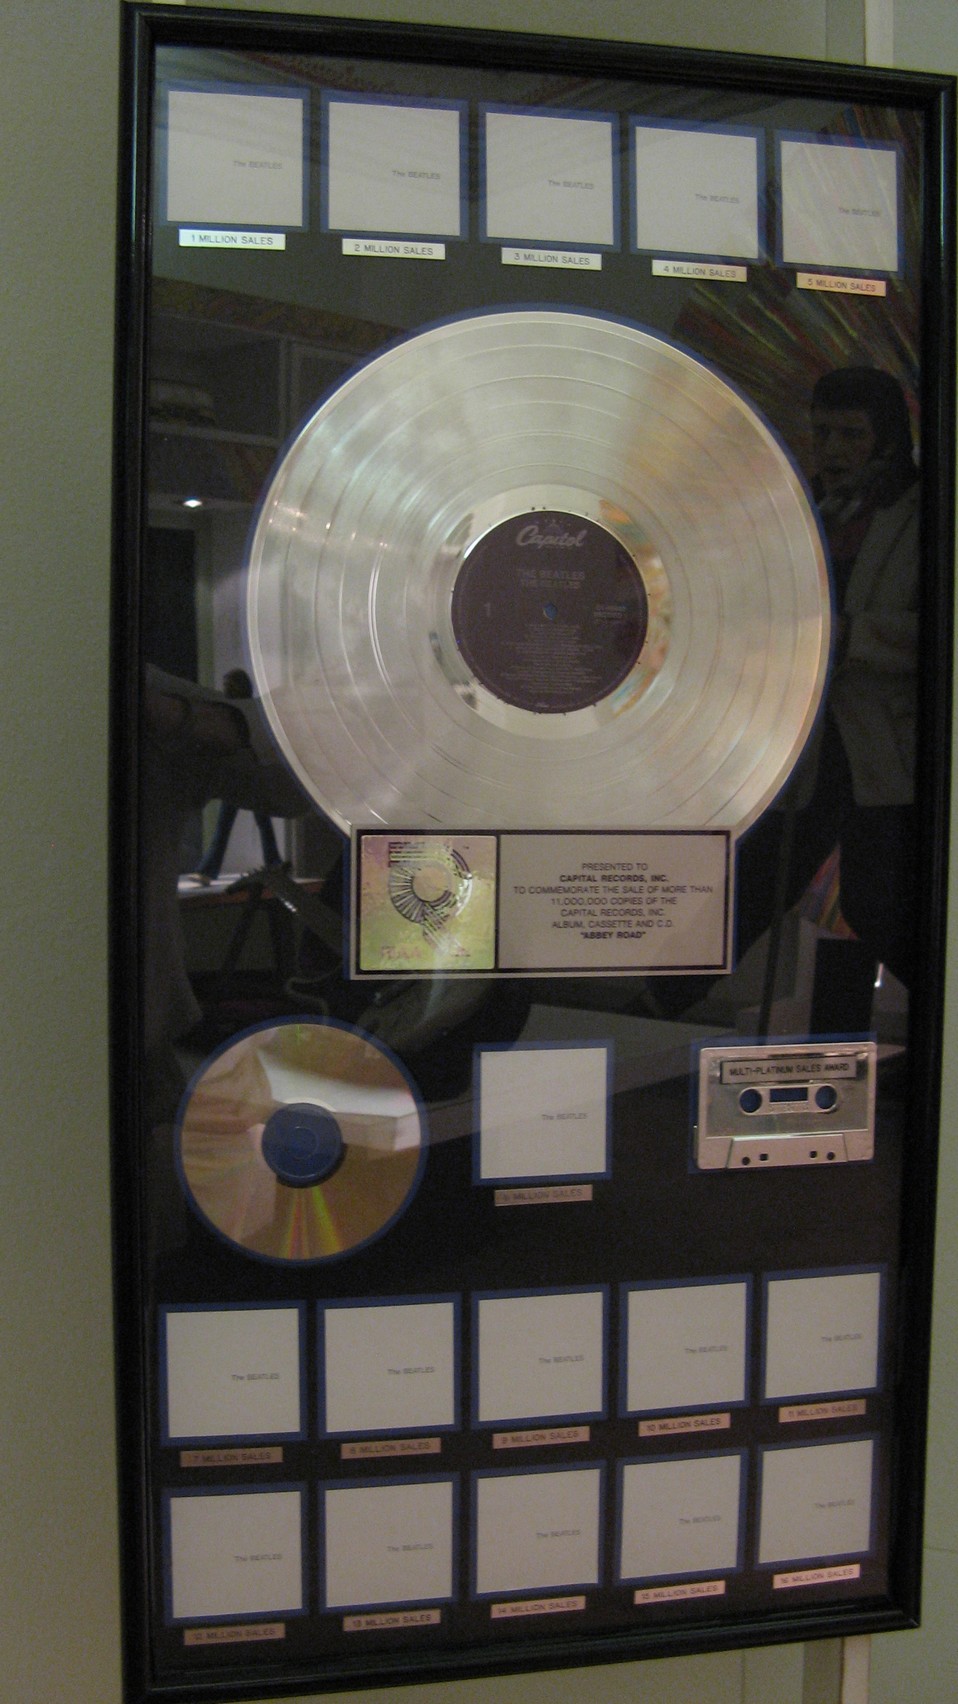 n_09- Disco di platino per la vendita di oltre 16 milioni di copie dell'album dei Beatles 'The Beatles' (White Album).jpg